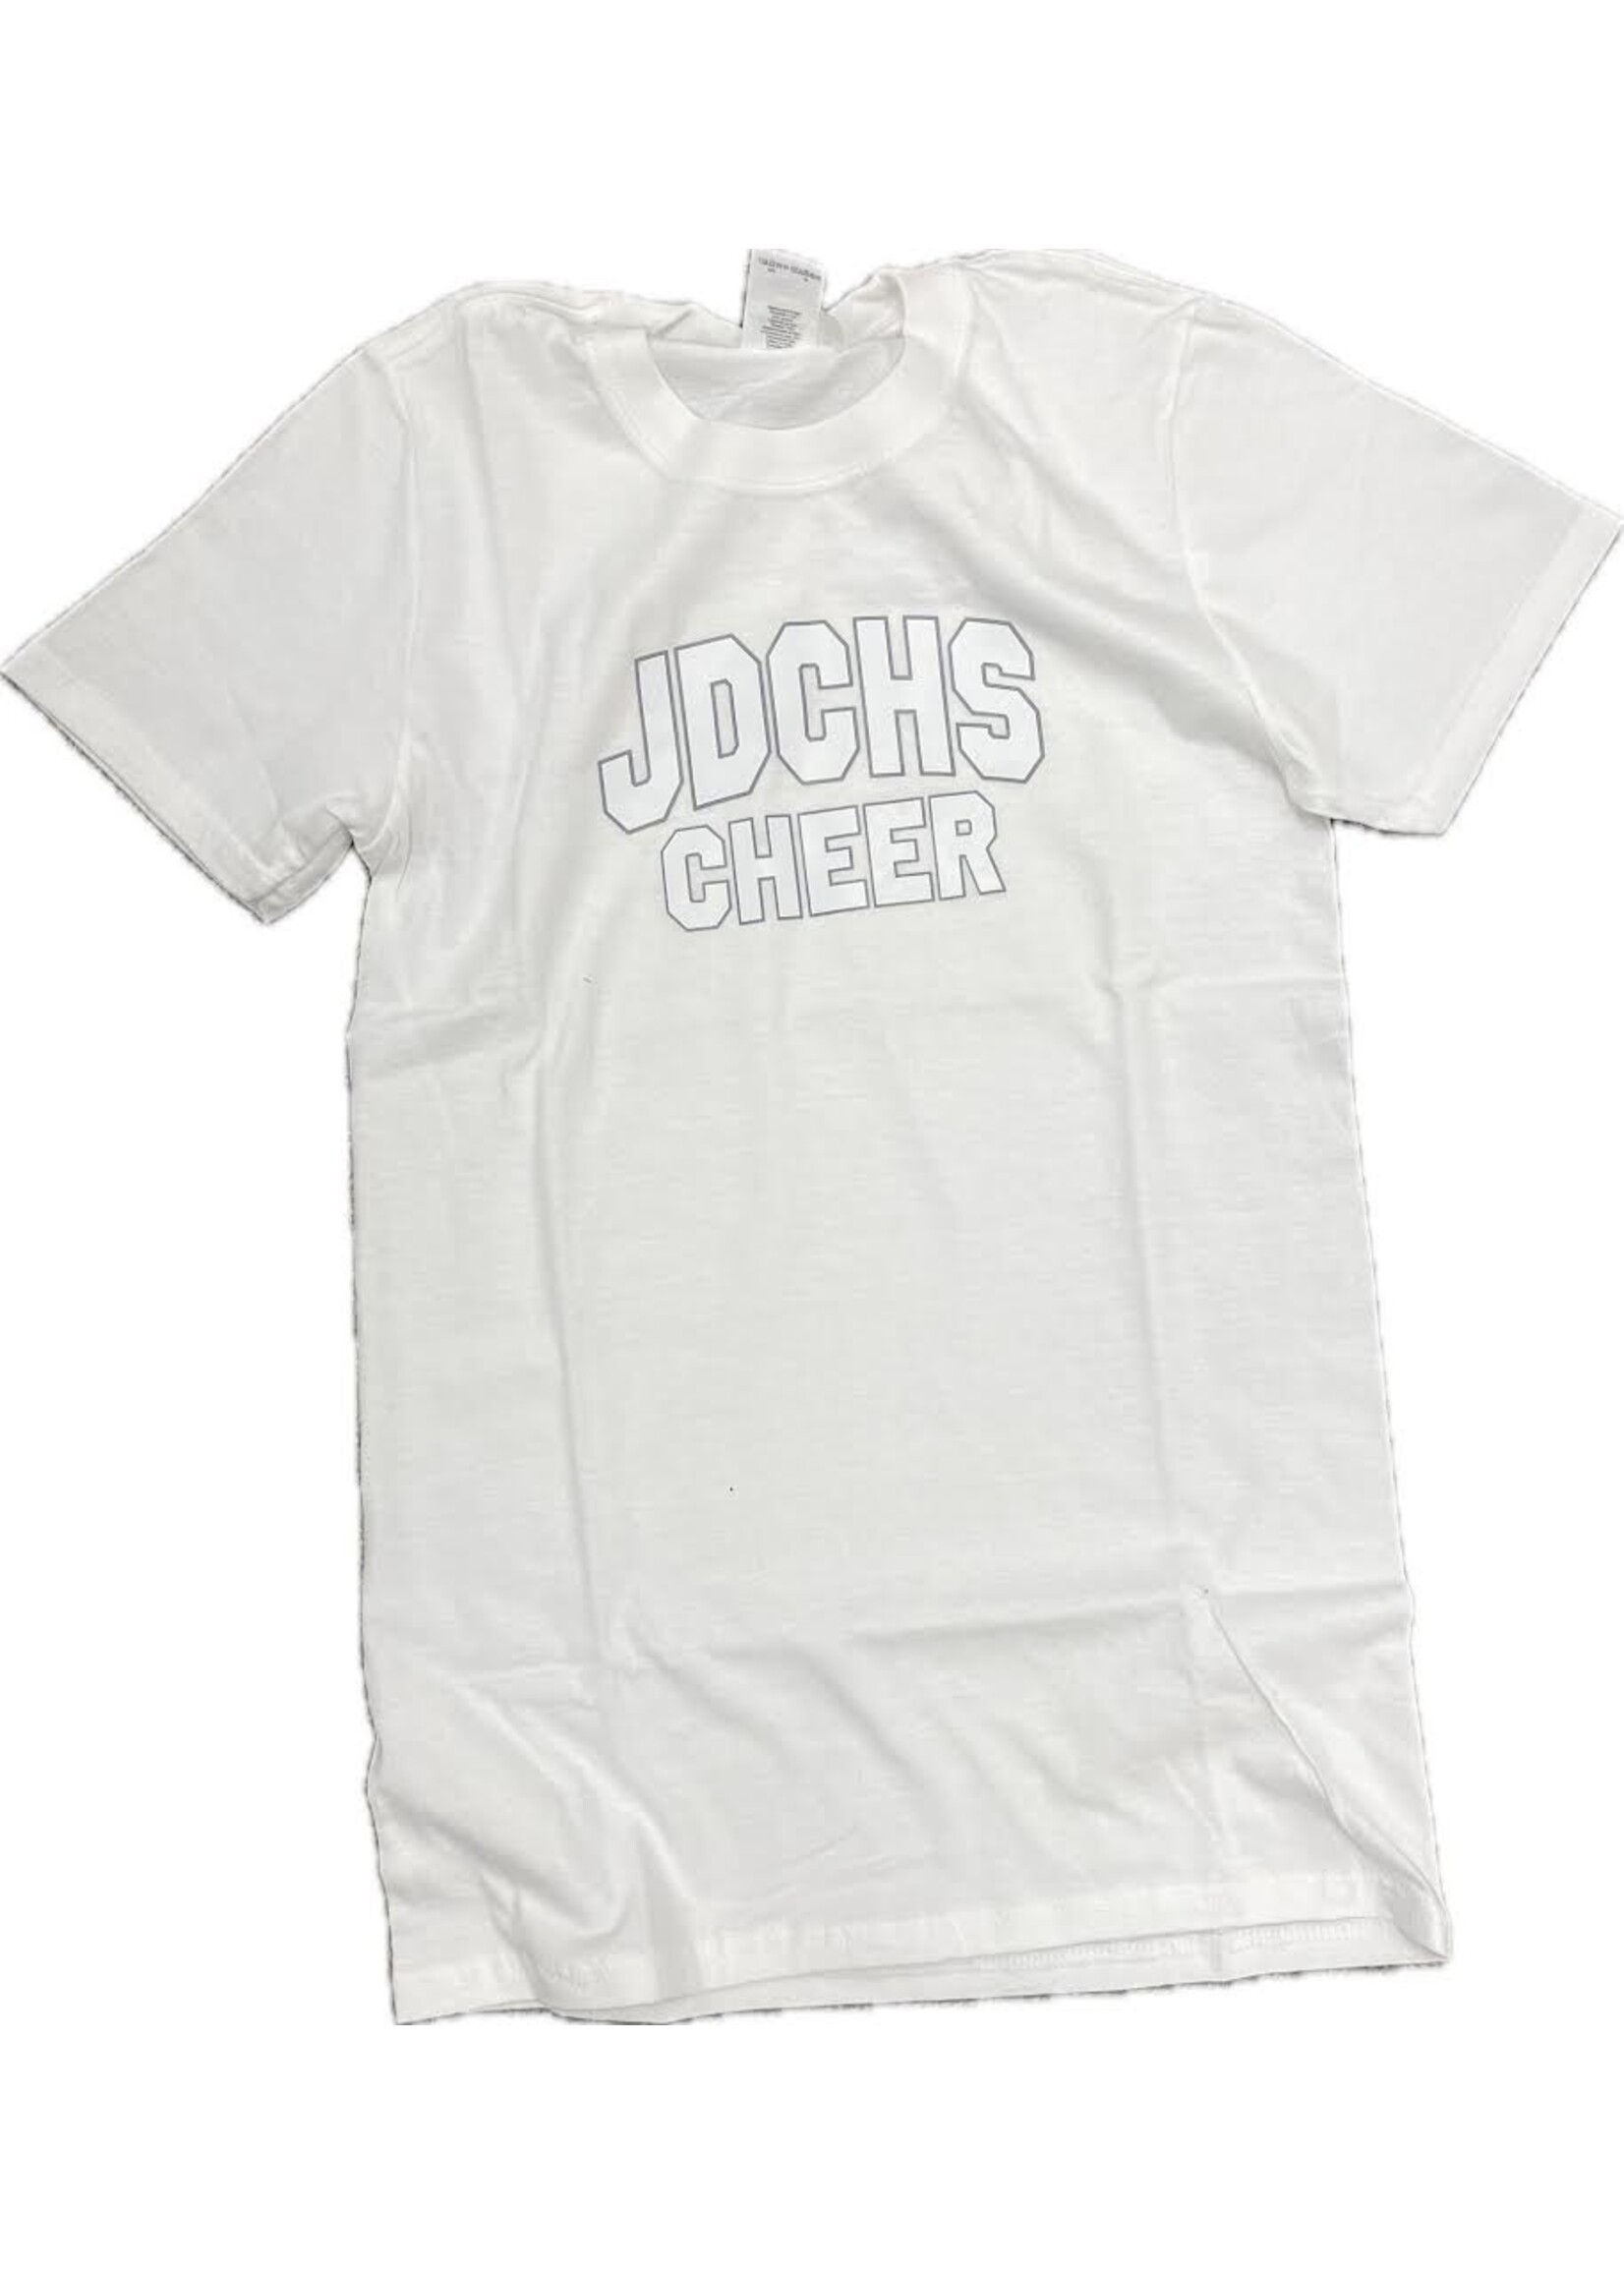 NON-UNIFORM JDCHS Cheer -  Spirit Shirt, Unisex